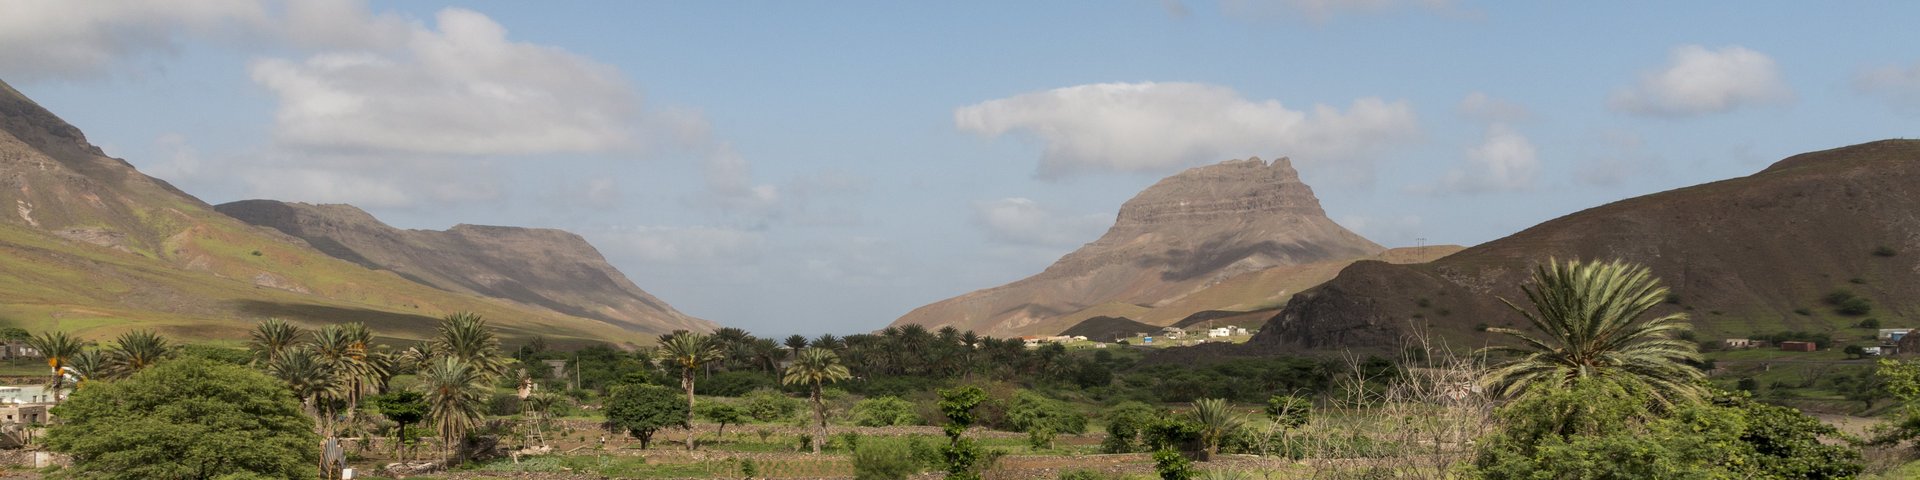 Vulkanlandschaft auf den Kapverdischen Inseln